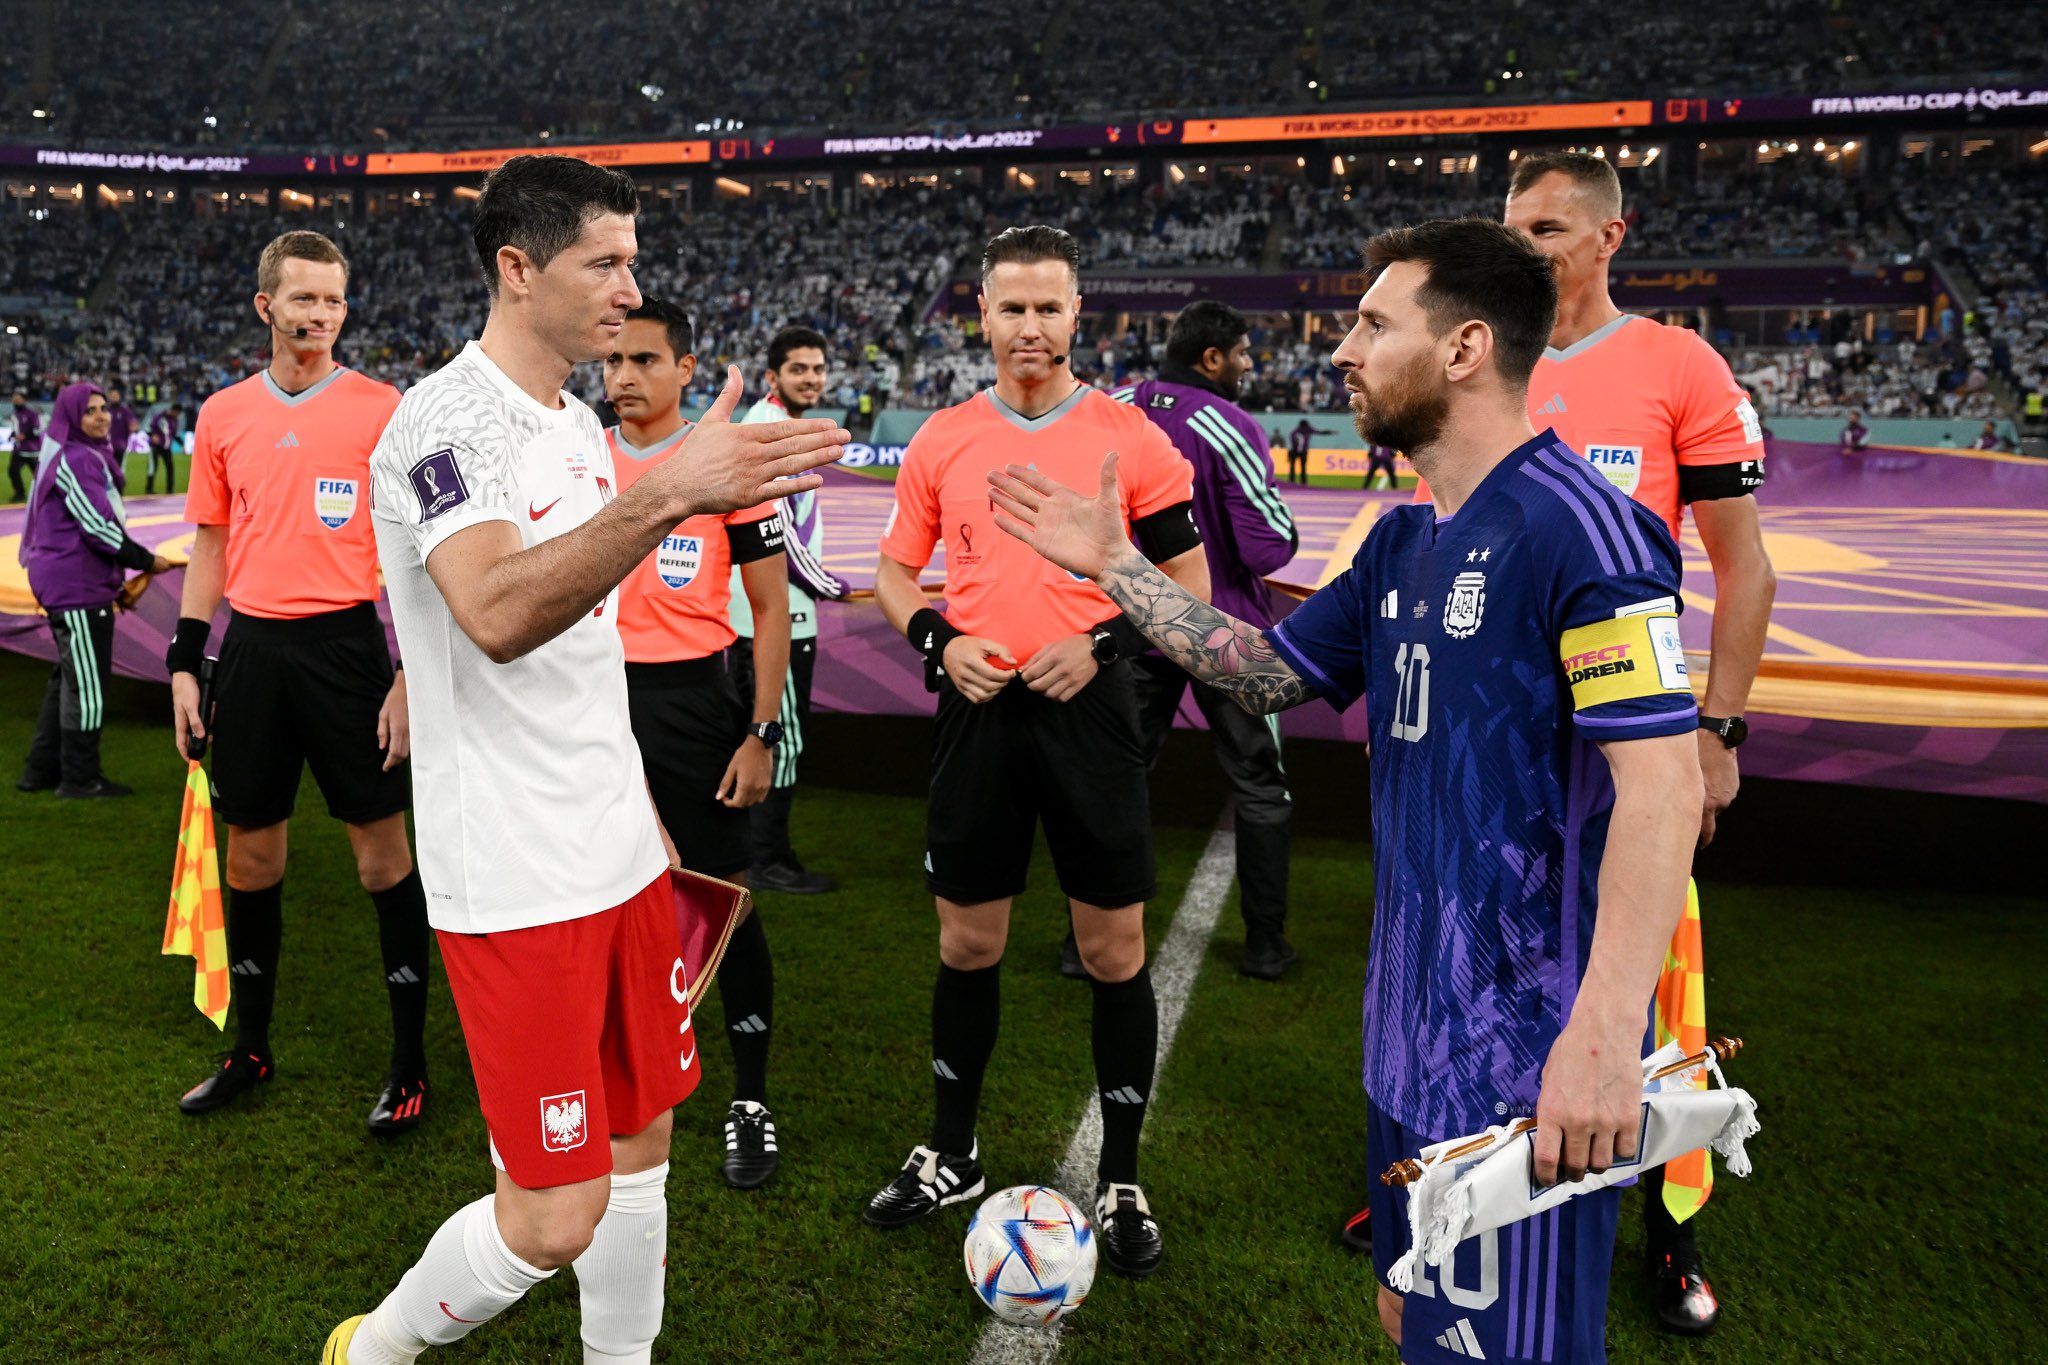  ليونيل ميسي رفقة روبرت ليفاندوفسكي قبل بداية مباراة الأرجنتين وبولندا فى كأس العالم قطر 2022.